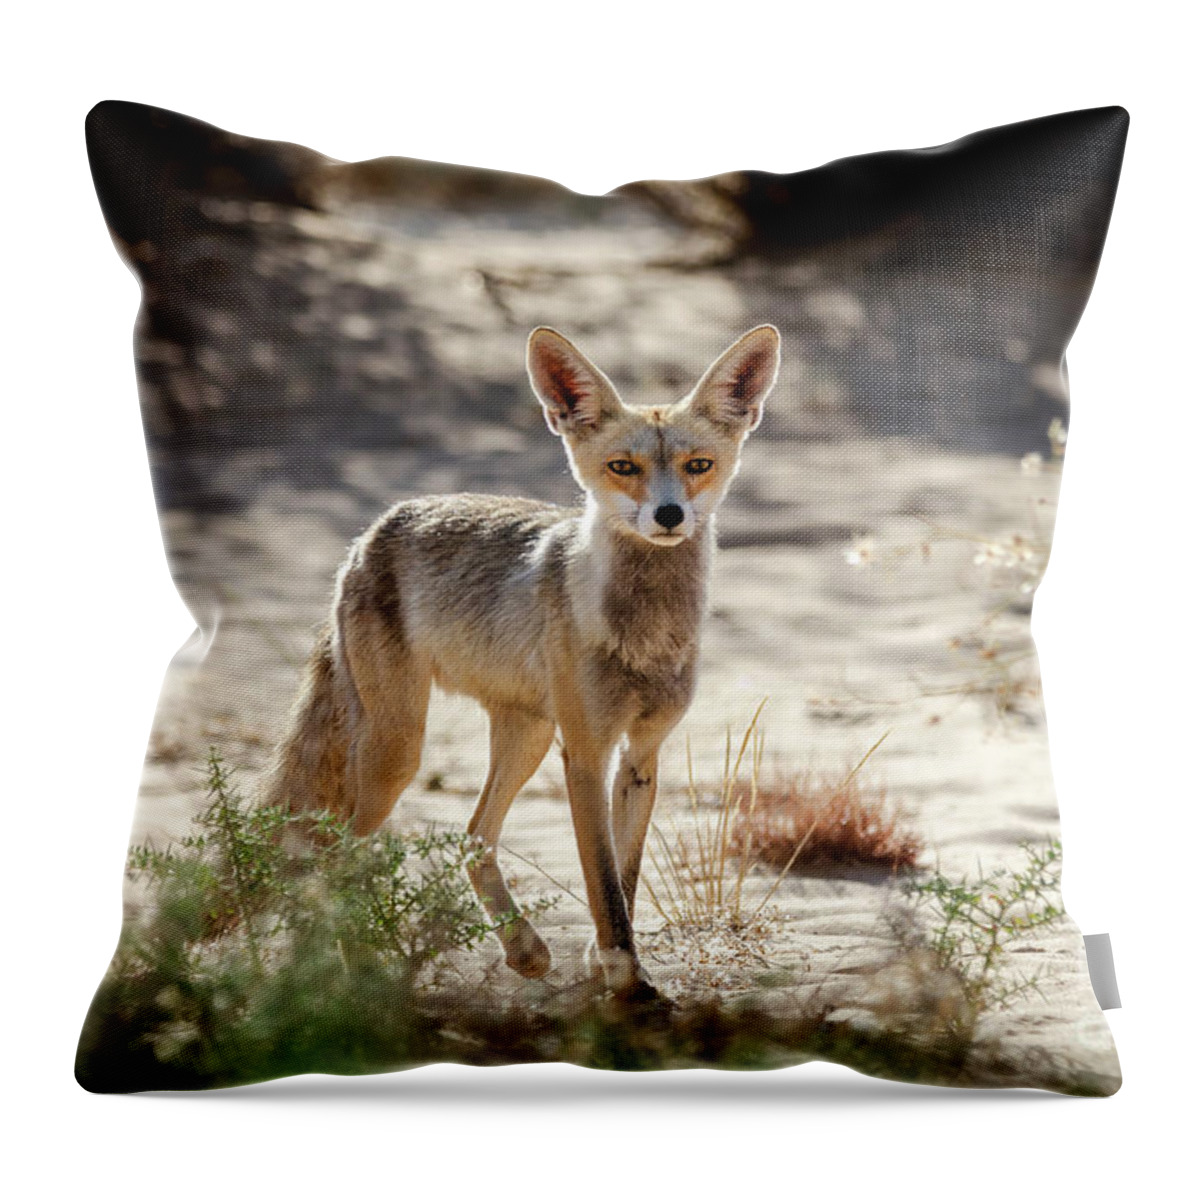 Prairie Throw Pillow featuring the photograph Desert Fox by Arik Baltinester